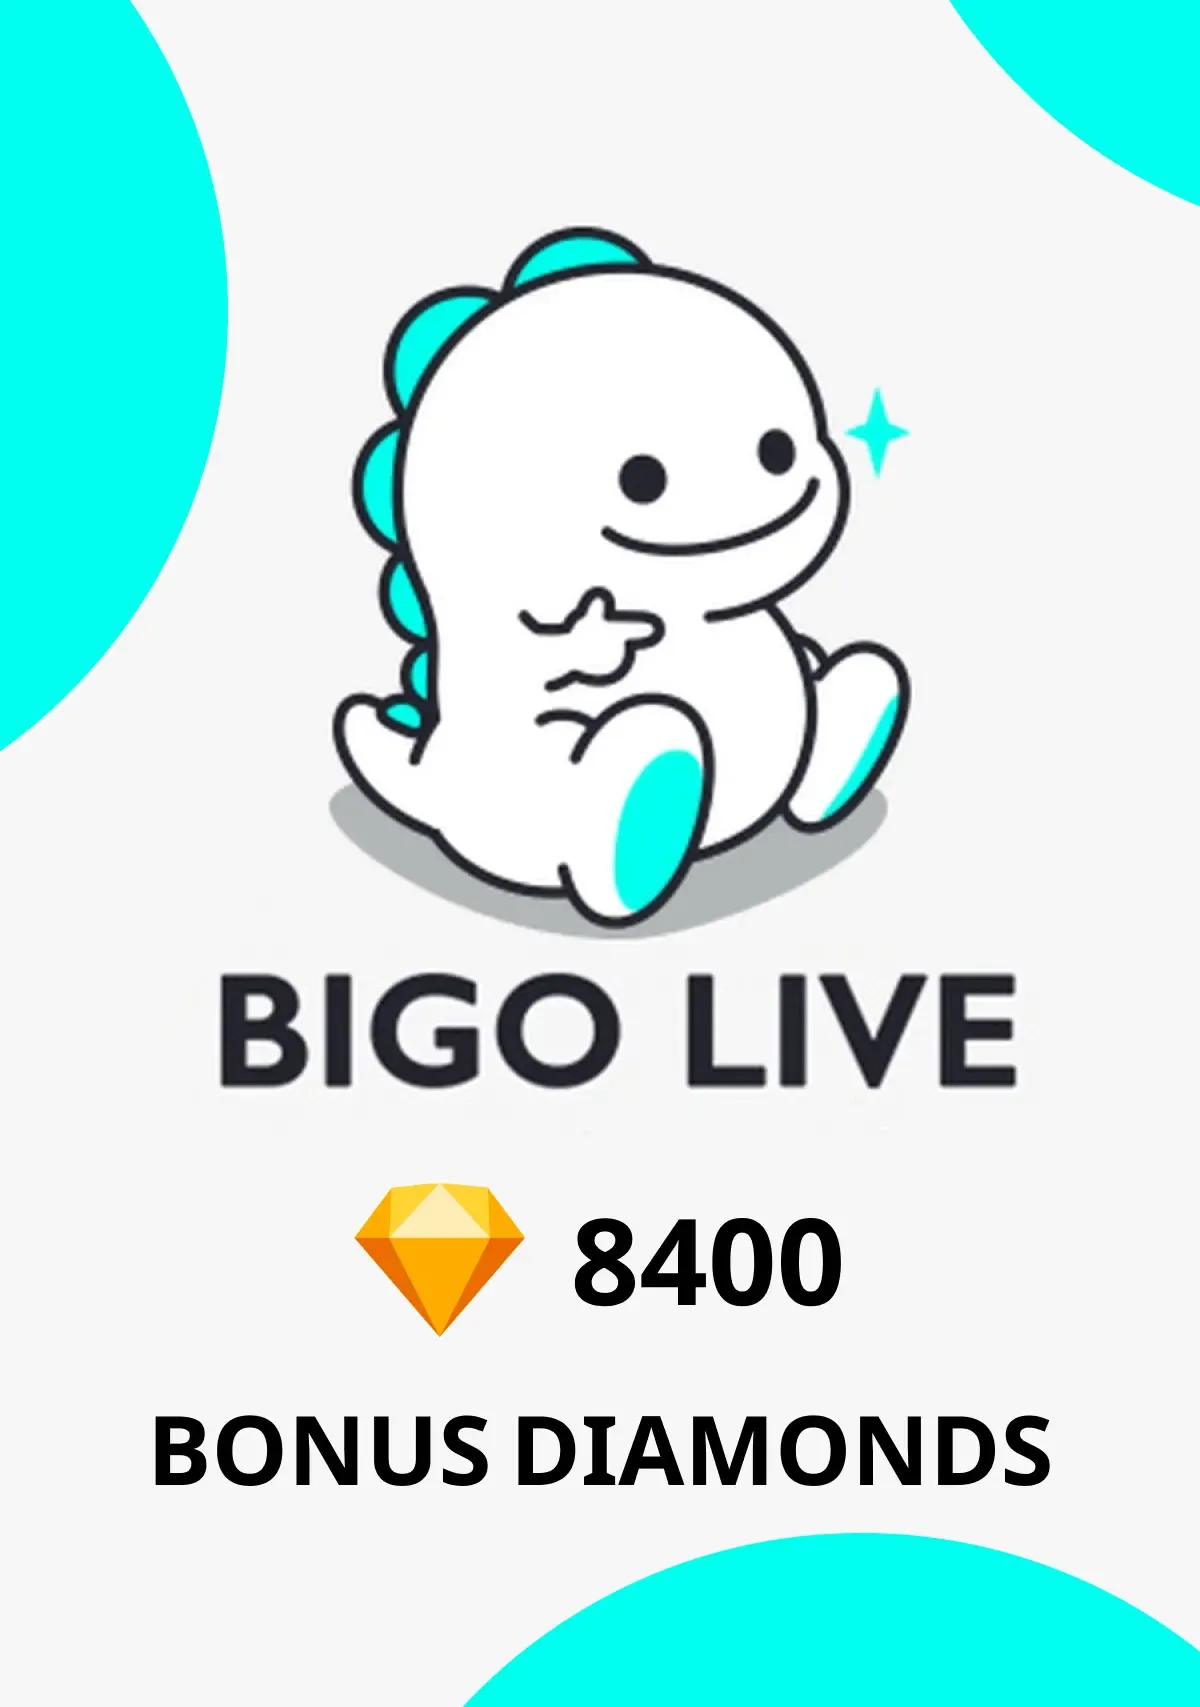 Comprar tarjeta regalo: Bigo Live Bonus Diamonds Digital Code PC